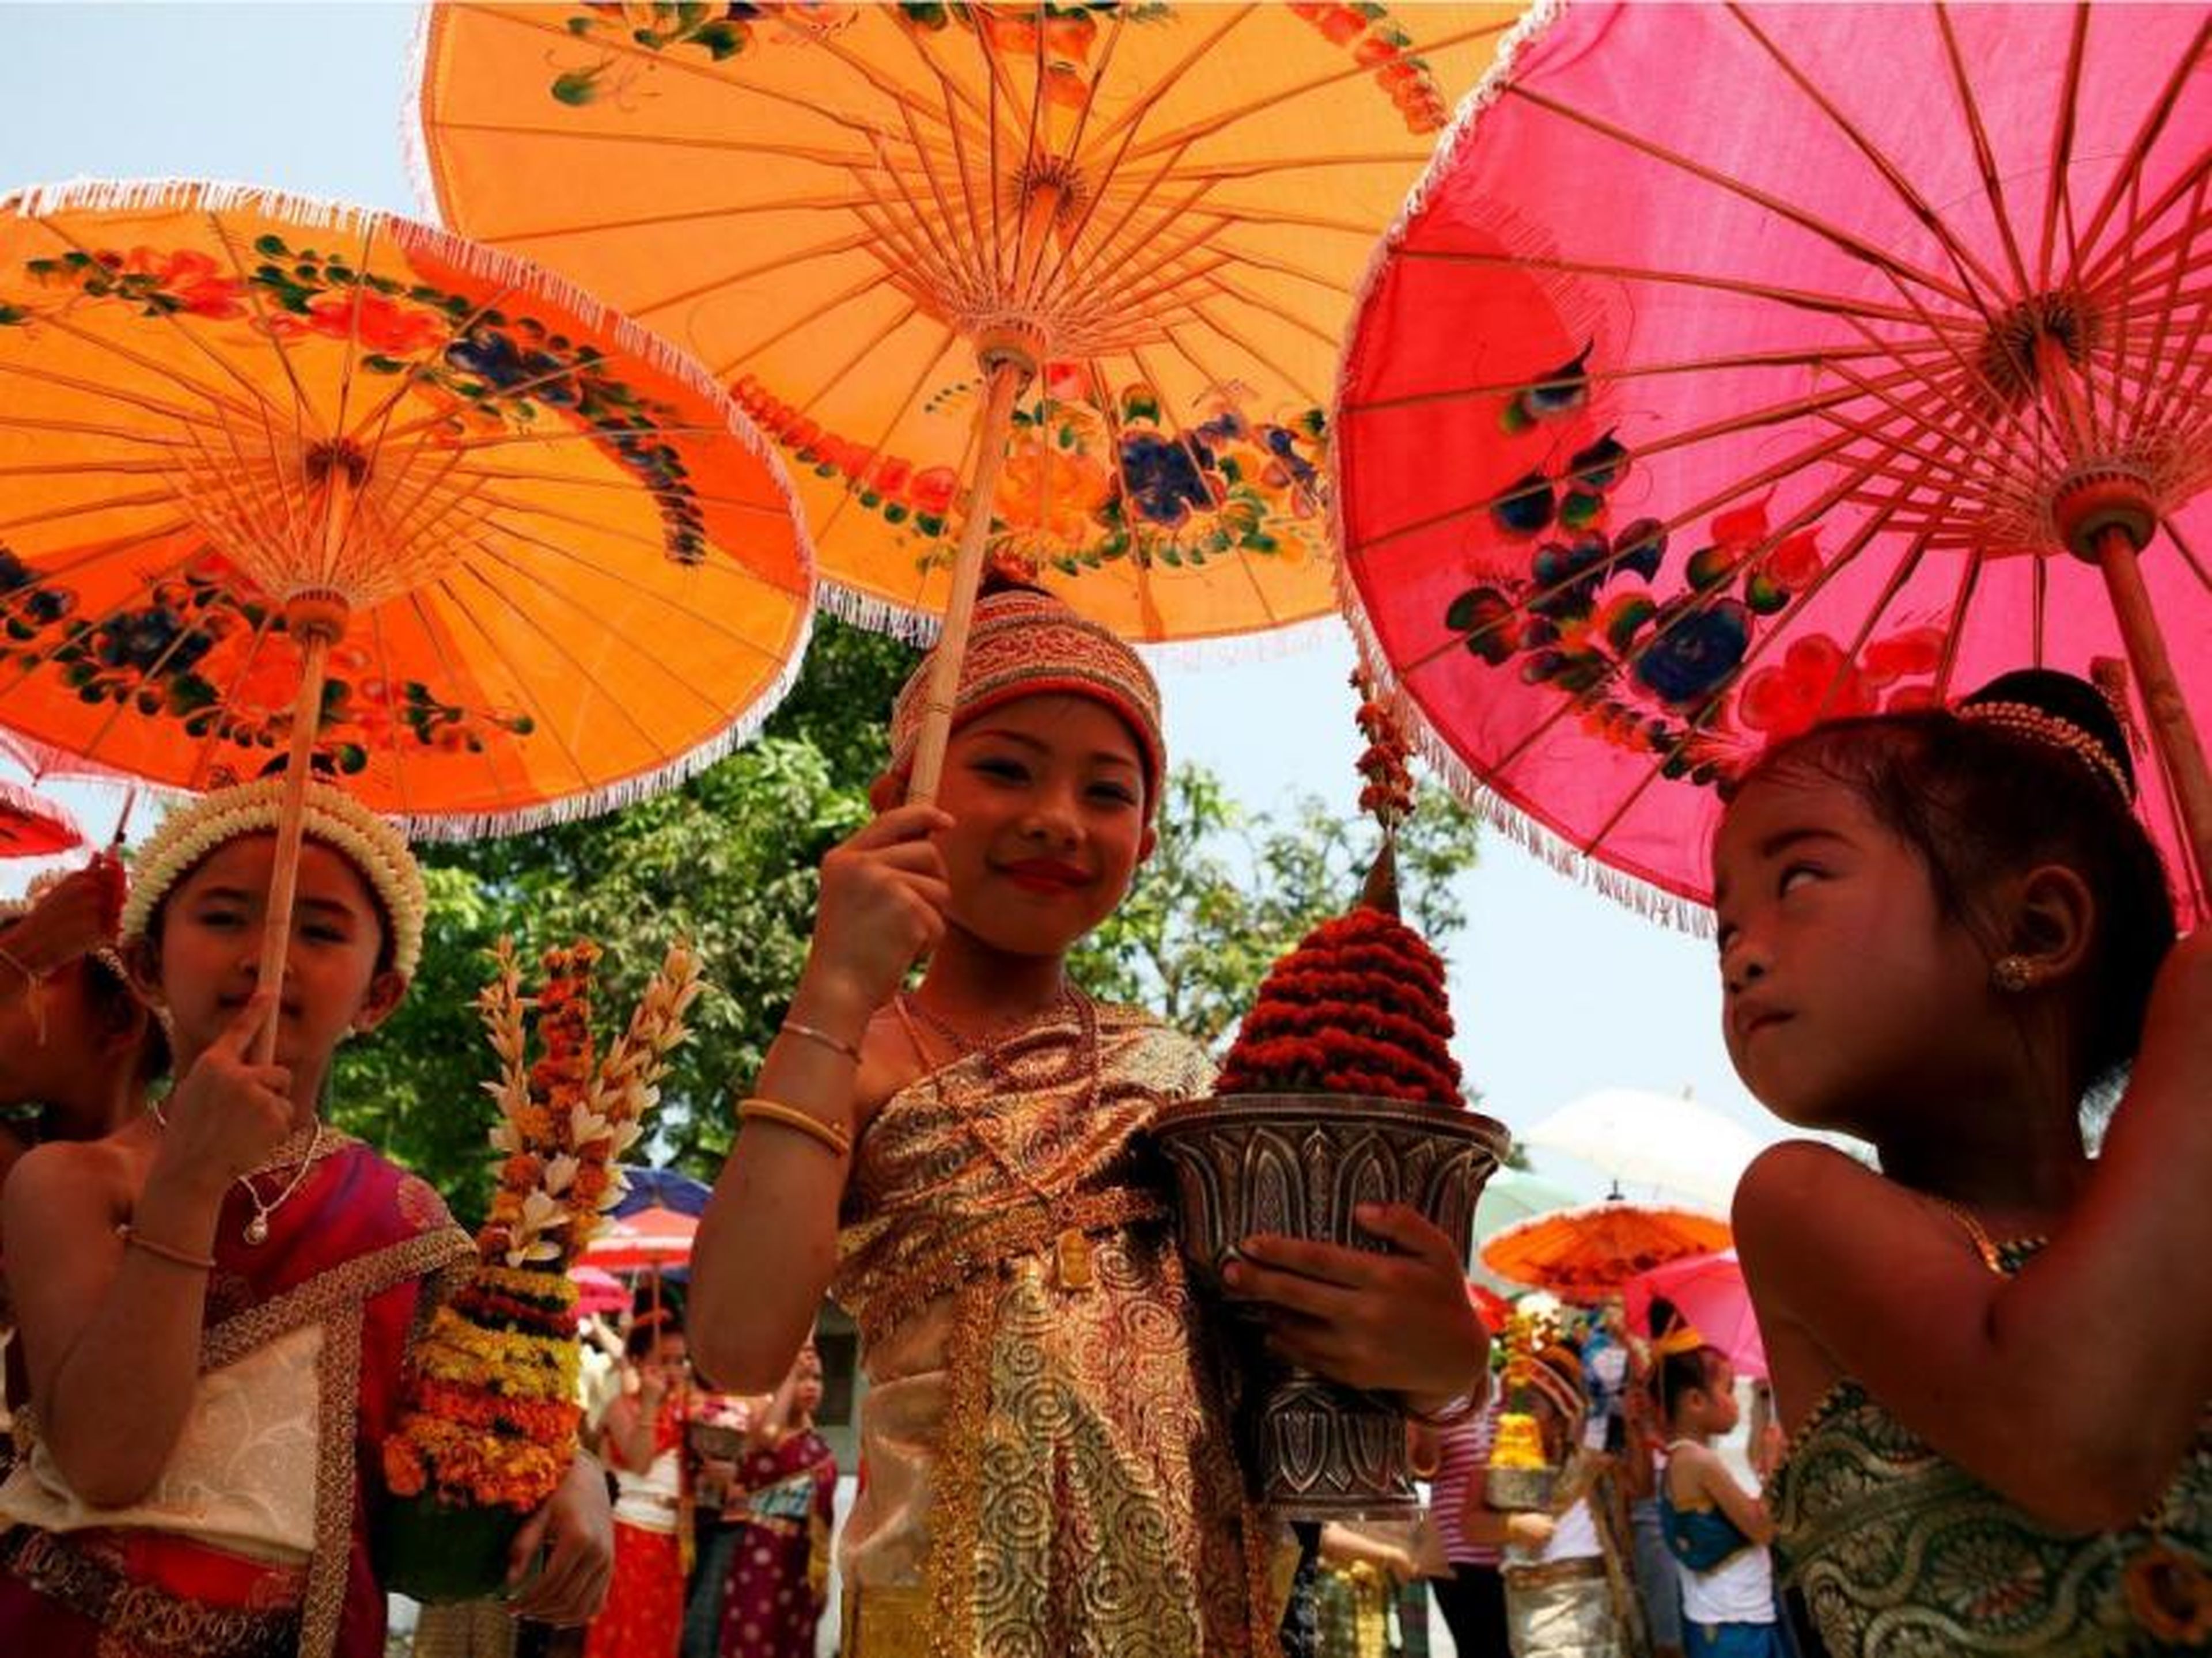 El Festival Songkran se realiza del 13 de abril al 15 de abril y es el inicio tradicional del Año Nuevo tailandés.